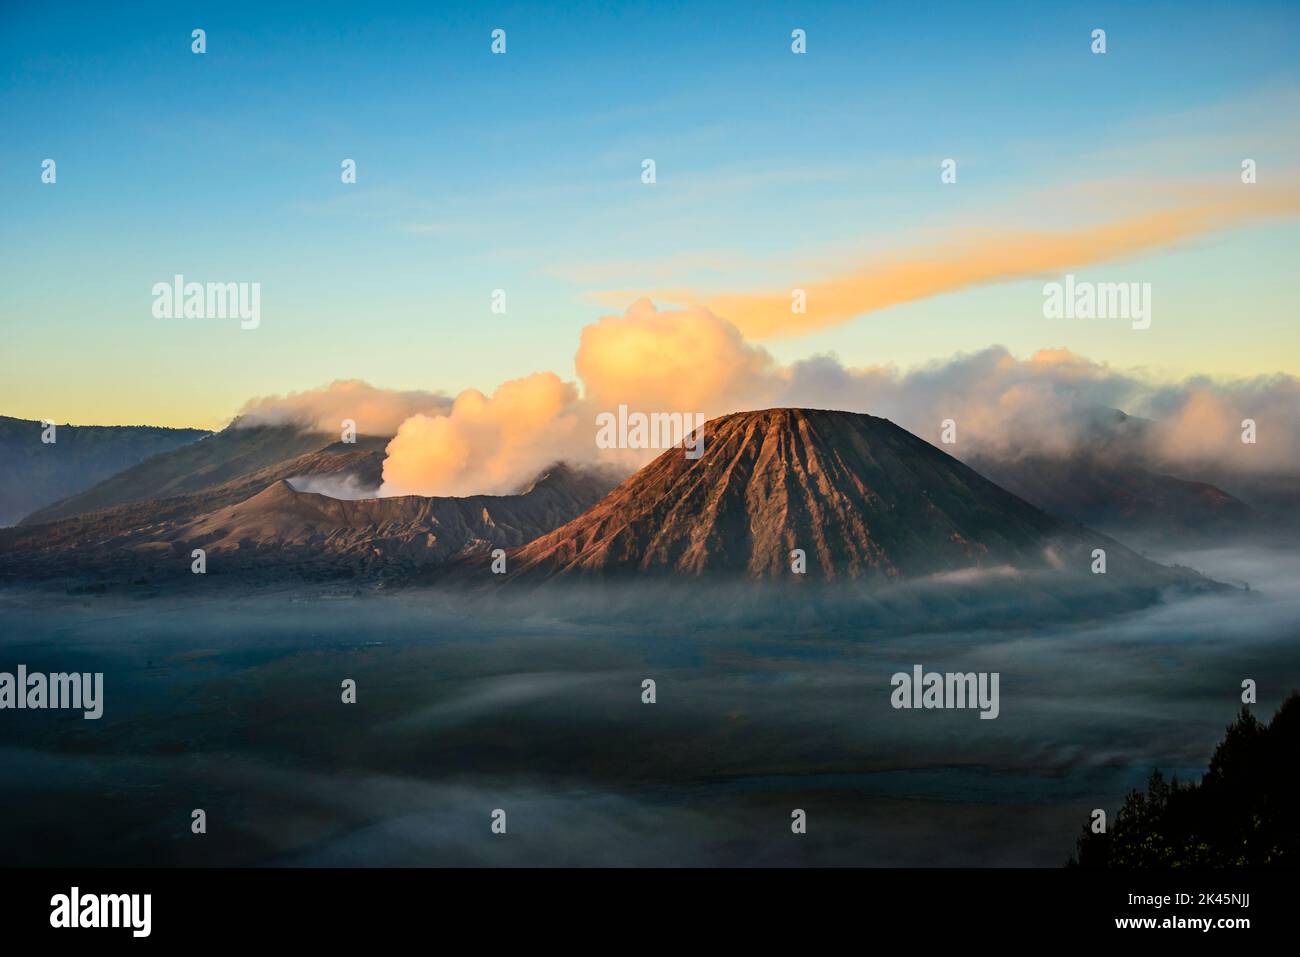 Monte bromo vulcano, un vulcano somma e parte della catena montuosa Tengger, il cono che si erge sopra la nebbia nel paesaggio. Foto Stock